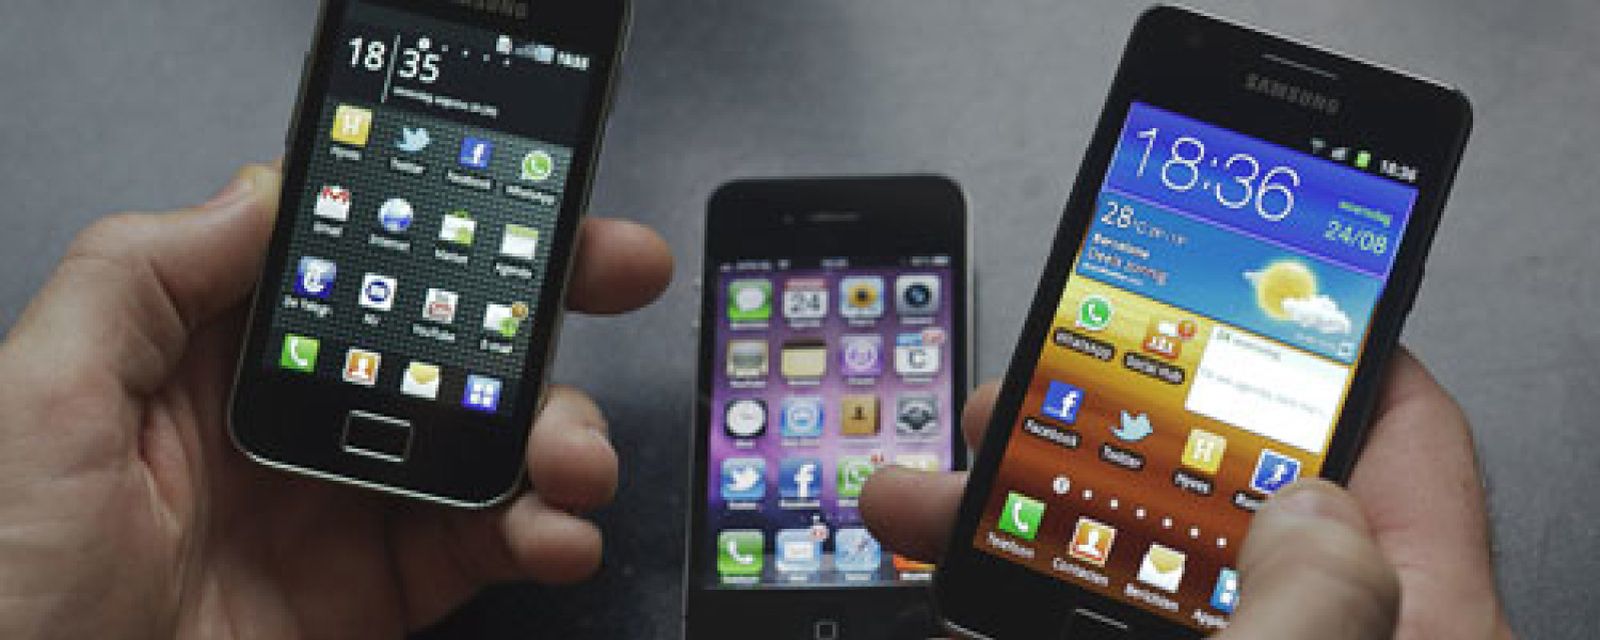 Foto: EEUU supera los 90 millones de smartphones en octubre y Android sube al 46%